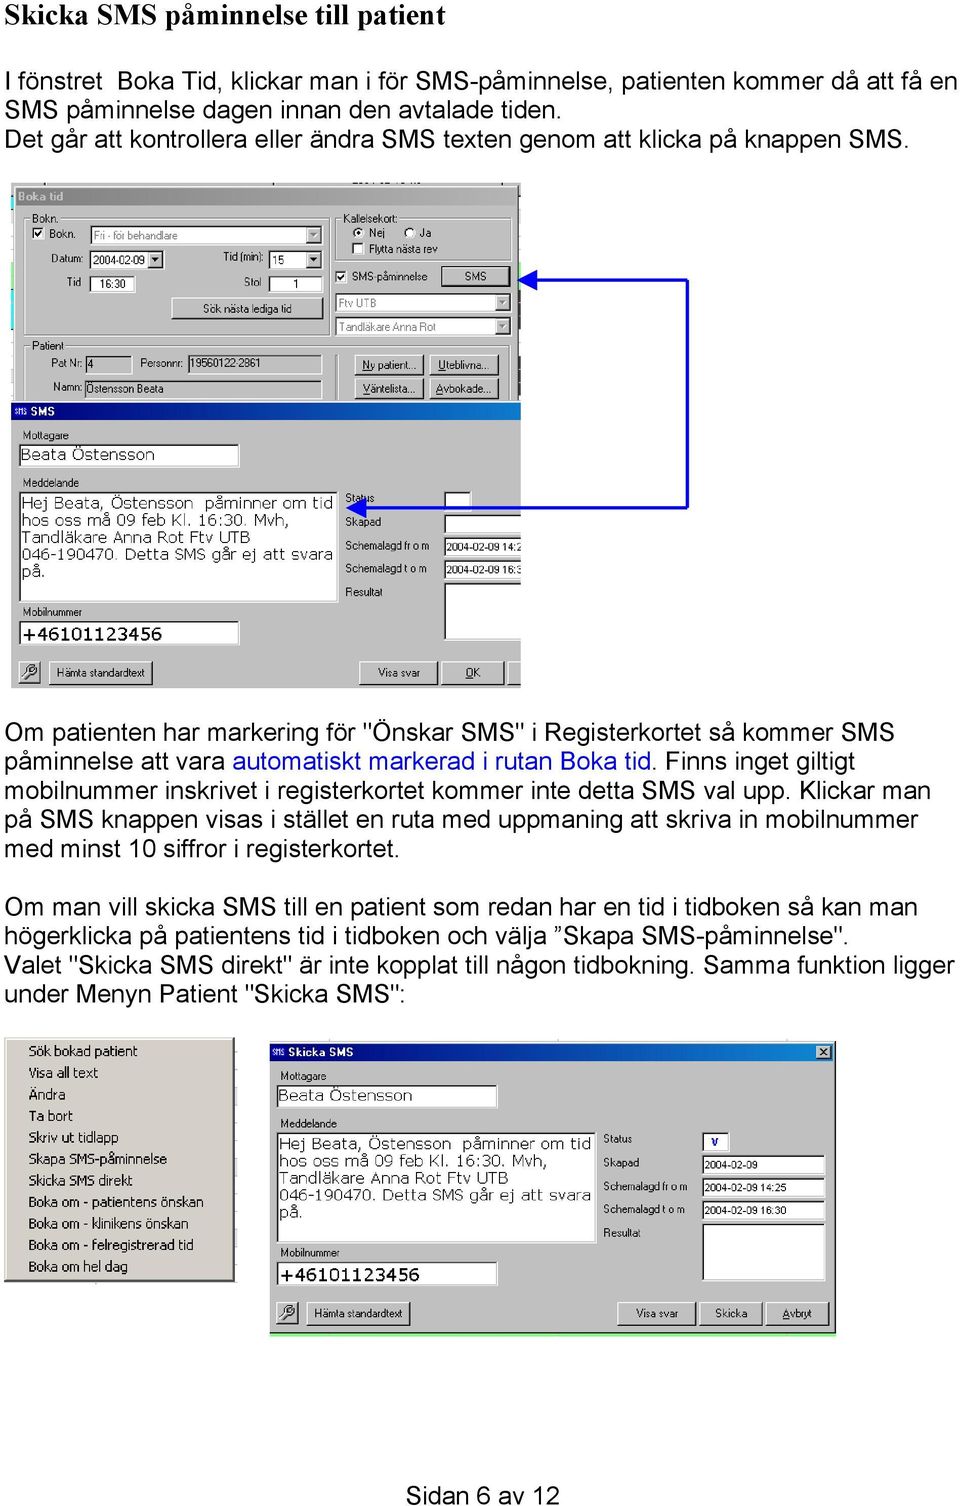 Om patienten har markering för "Önskar SMS" i Registerkortet så kommer SMS påminnelse att vara automatiskt markerad i rutan Boka tid.